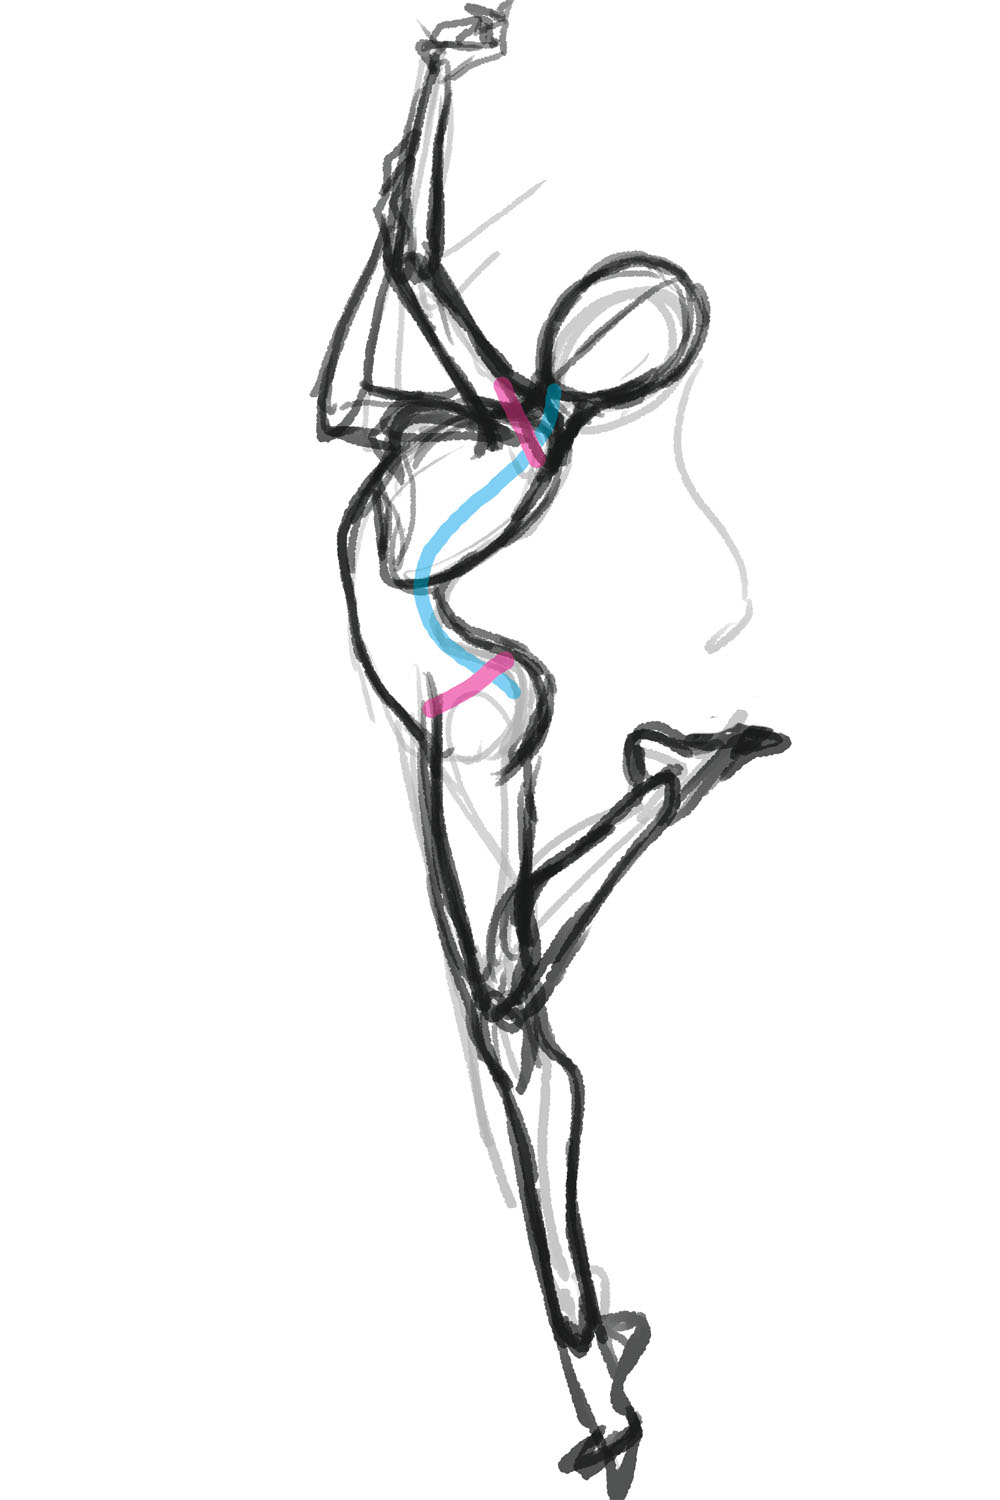 セクシーな前かがみのポーズなど 激しい動きと重力によって変化する体の部位を表現する 動きのあるポーズの描き方 セクシーキャラクター編 第5回 Pictures